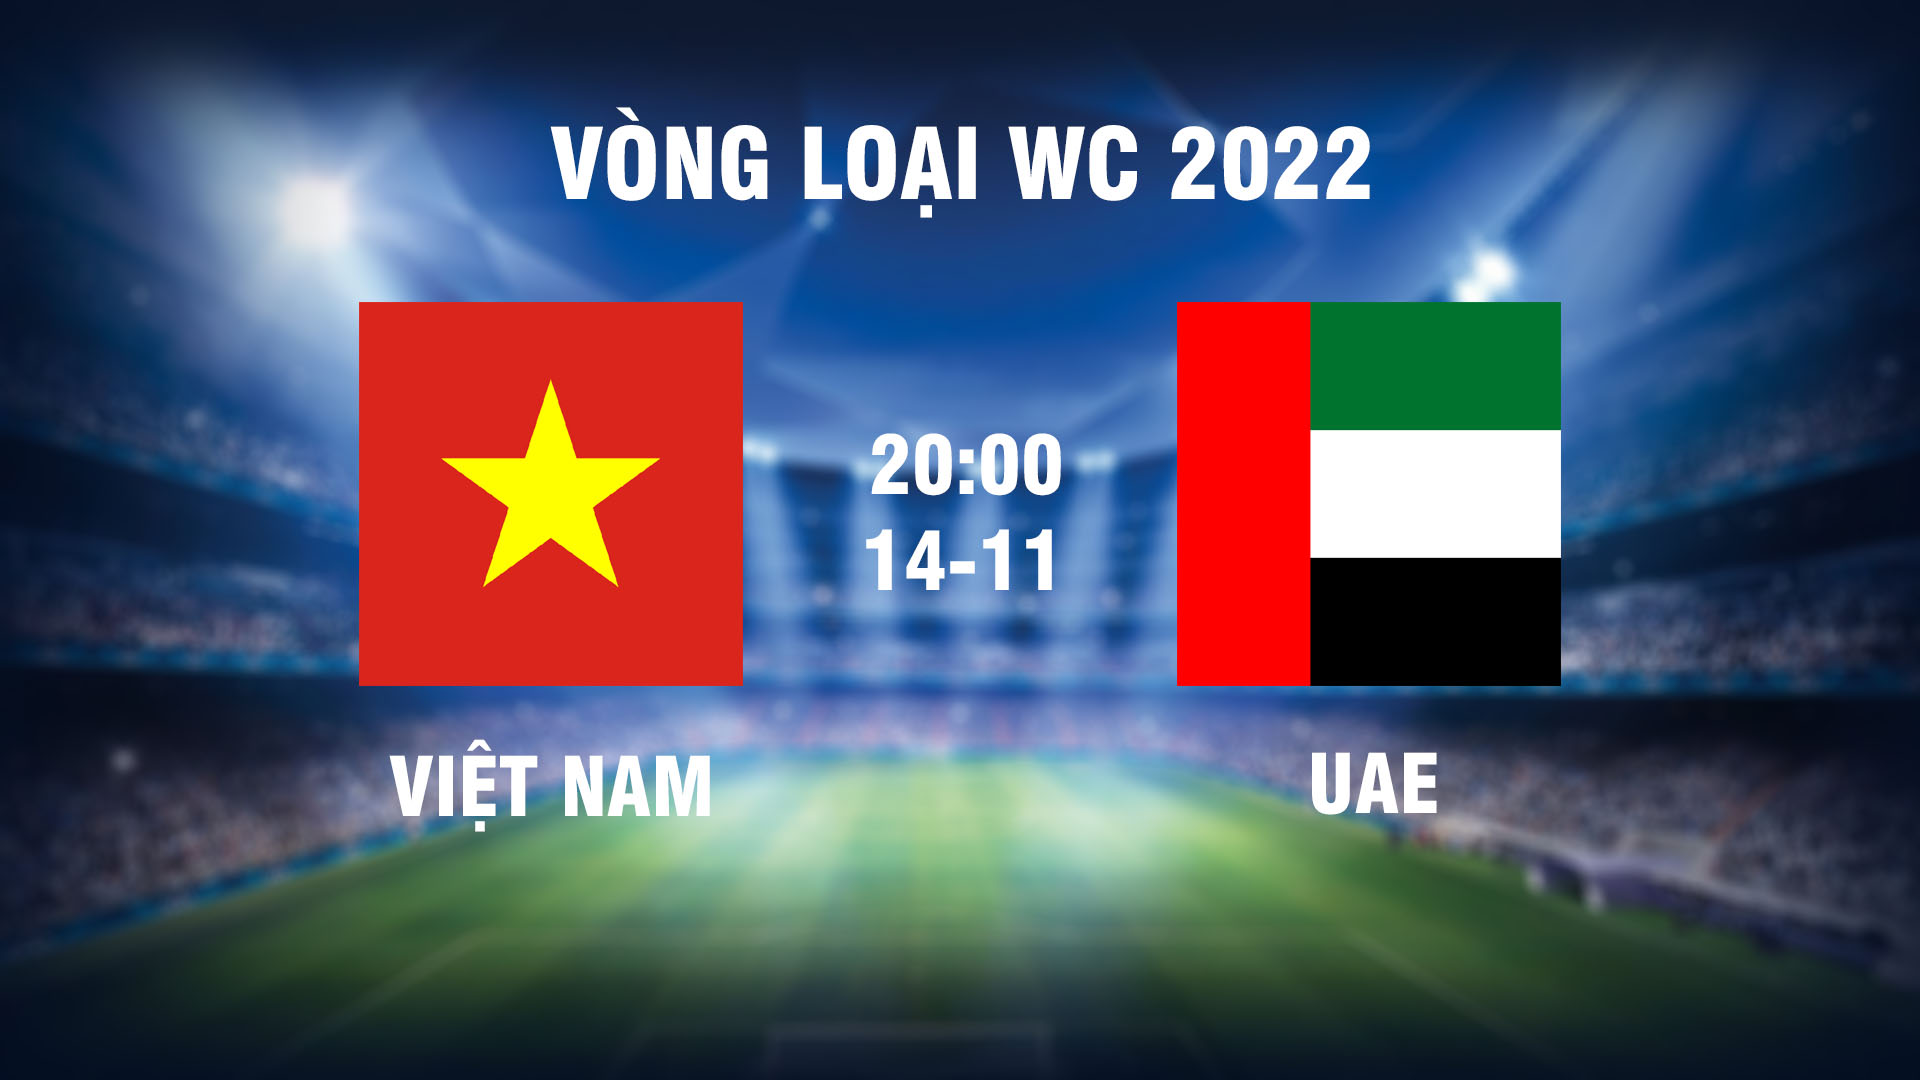 Cập nhật pha bóng hấp dẫn trận Việt Nam vs UAE - Vòng loại World Cup 2022 | FPT Play